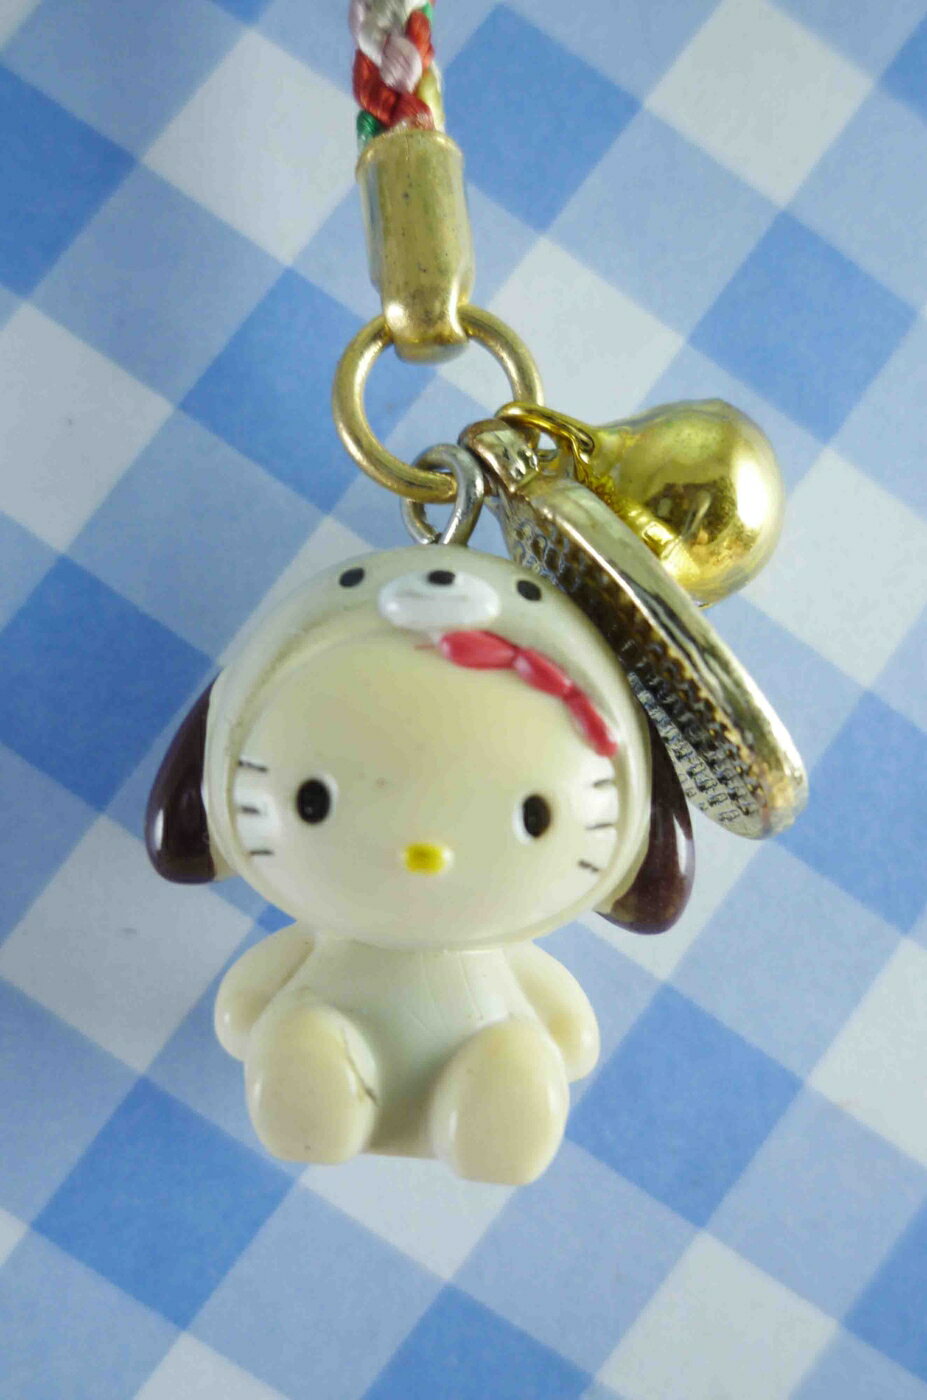 【震撼精品百貨】Hello Kitty 凱蒂貓 開運手機吊飾-狗 震撼日式精品百貨